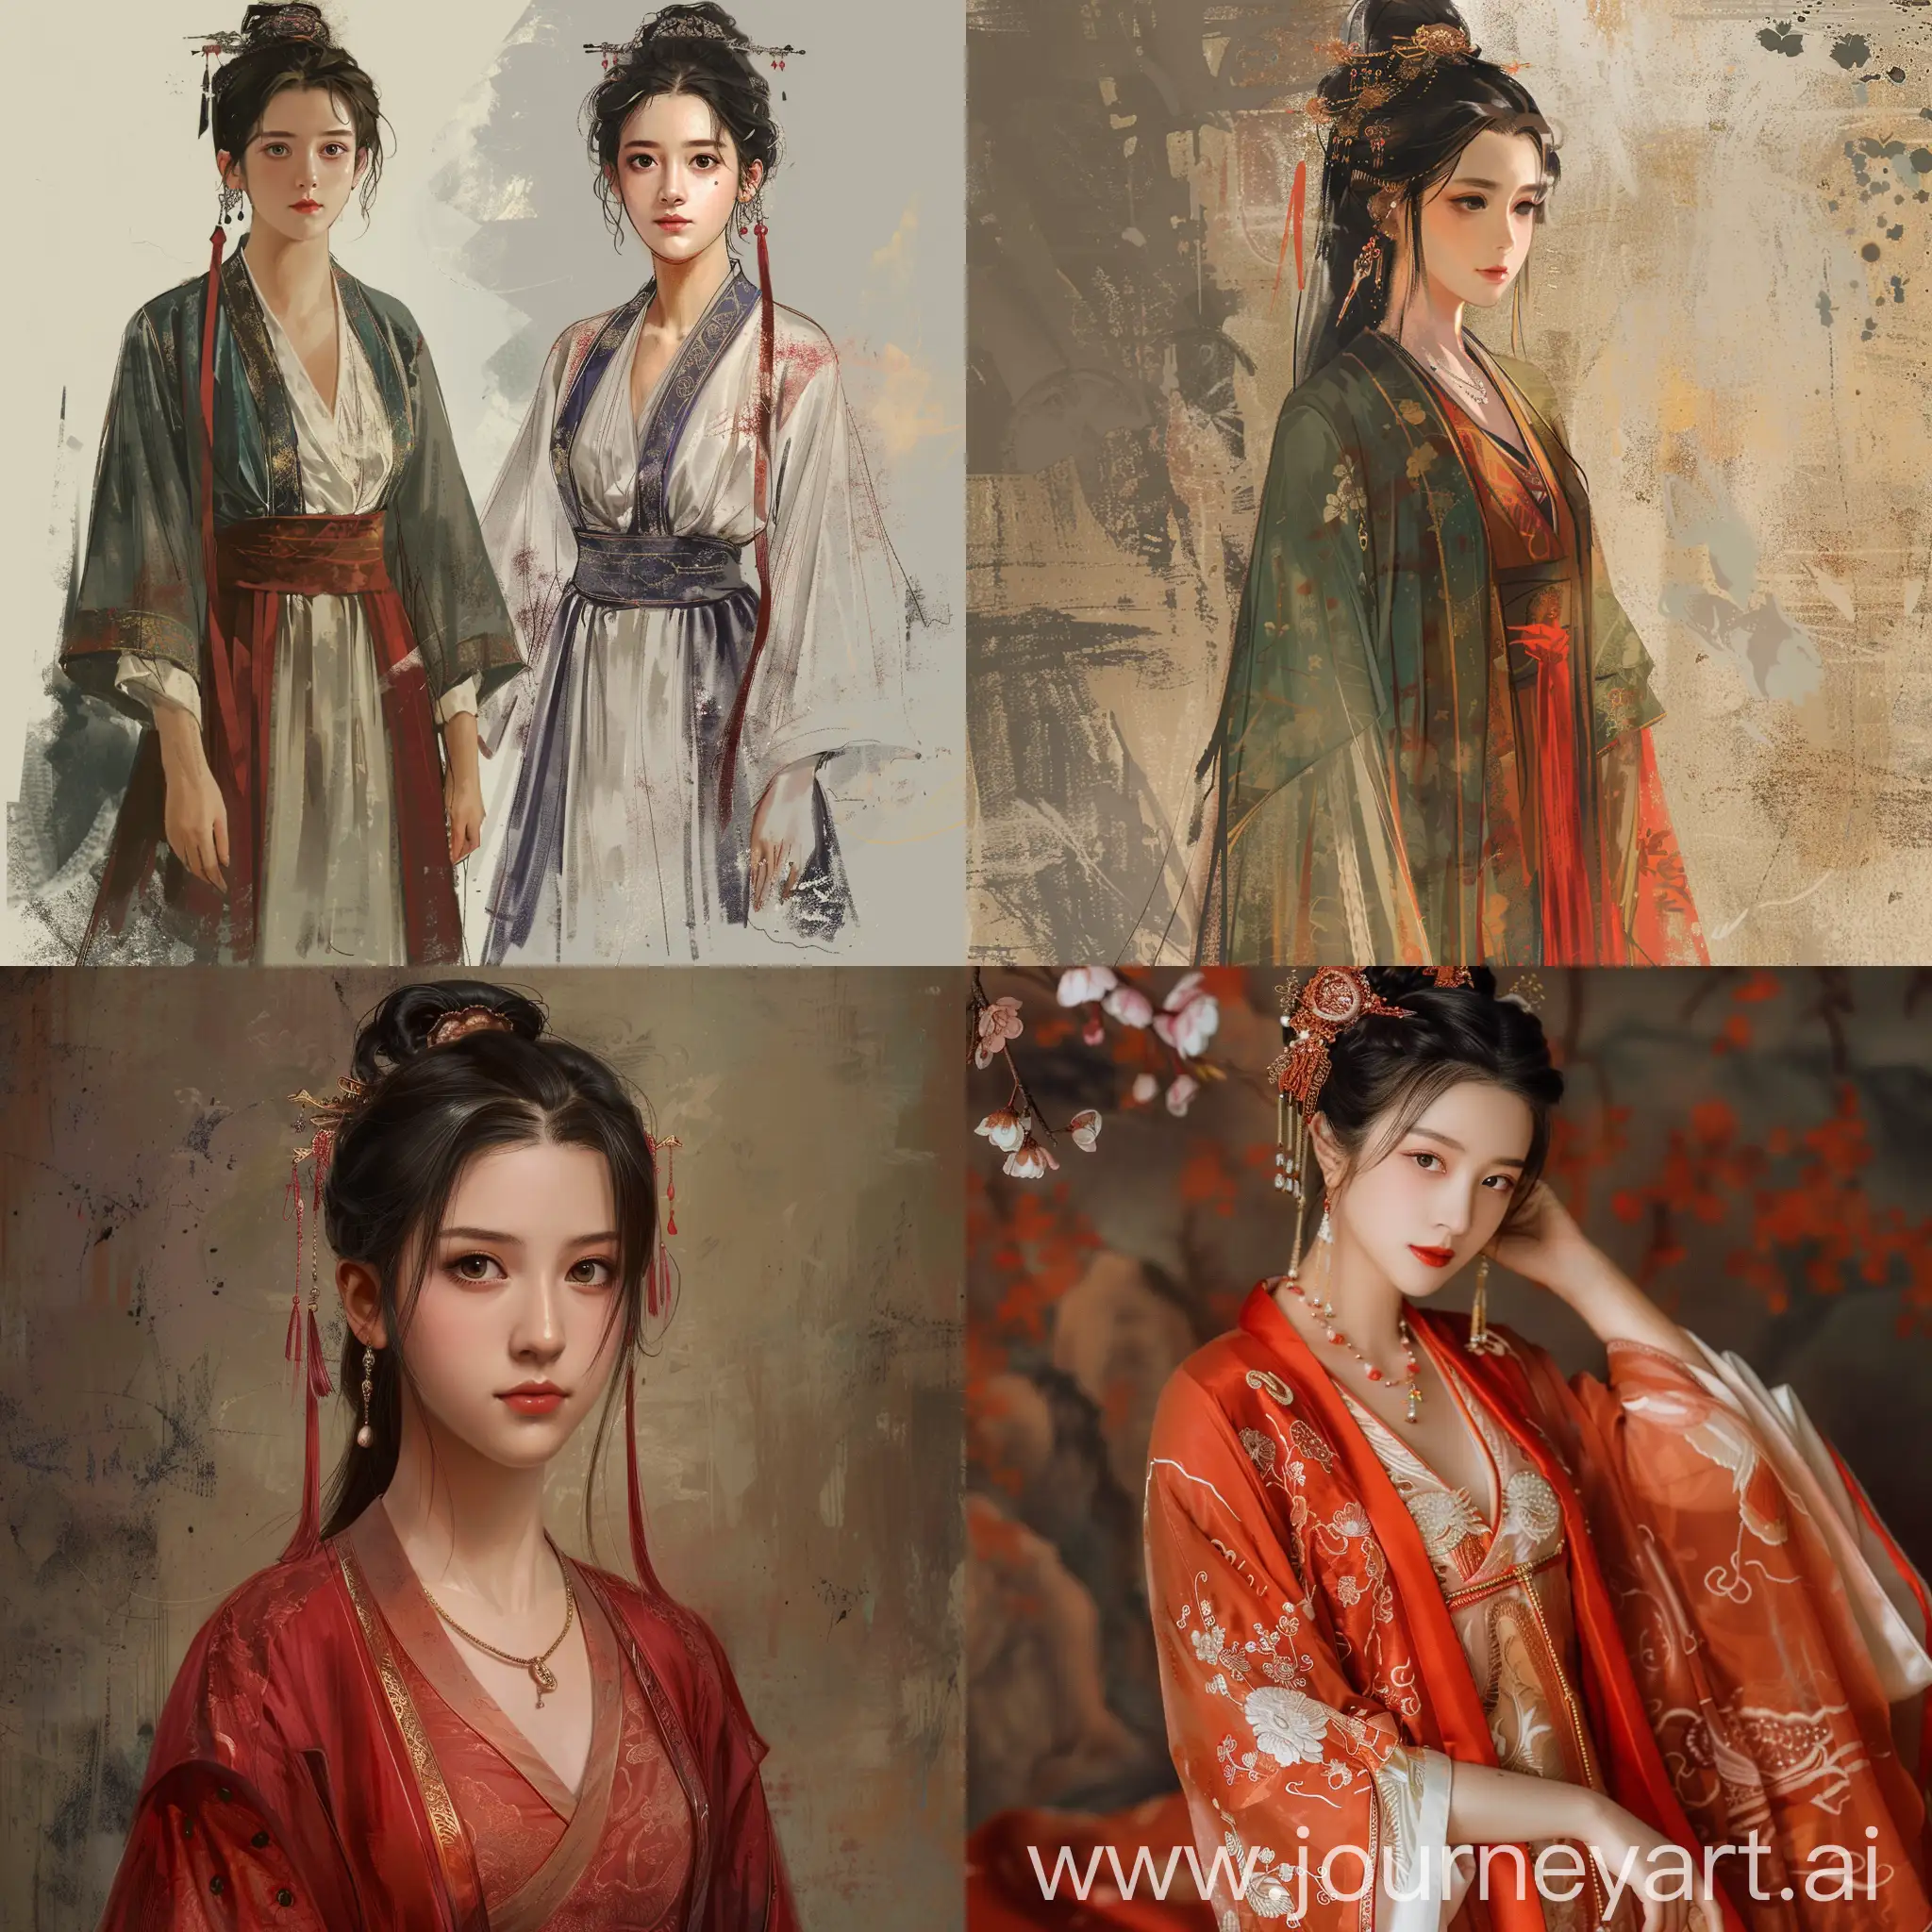 帮我画一副中国古典美女的照片，衣服式样以唐代标准
。